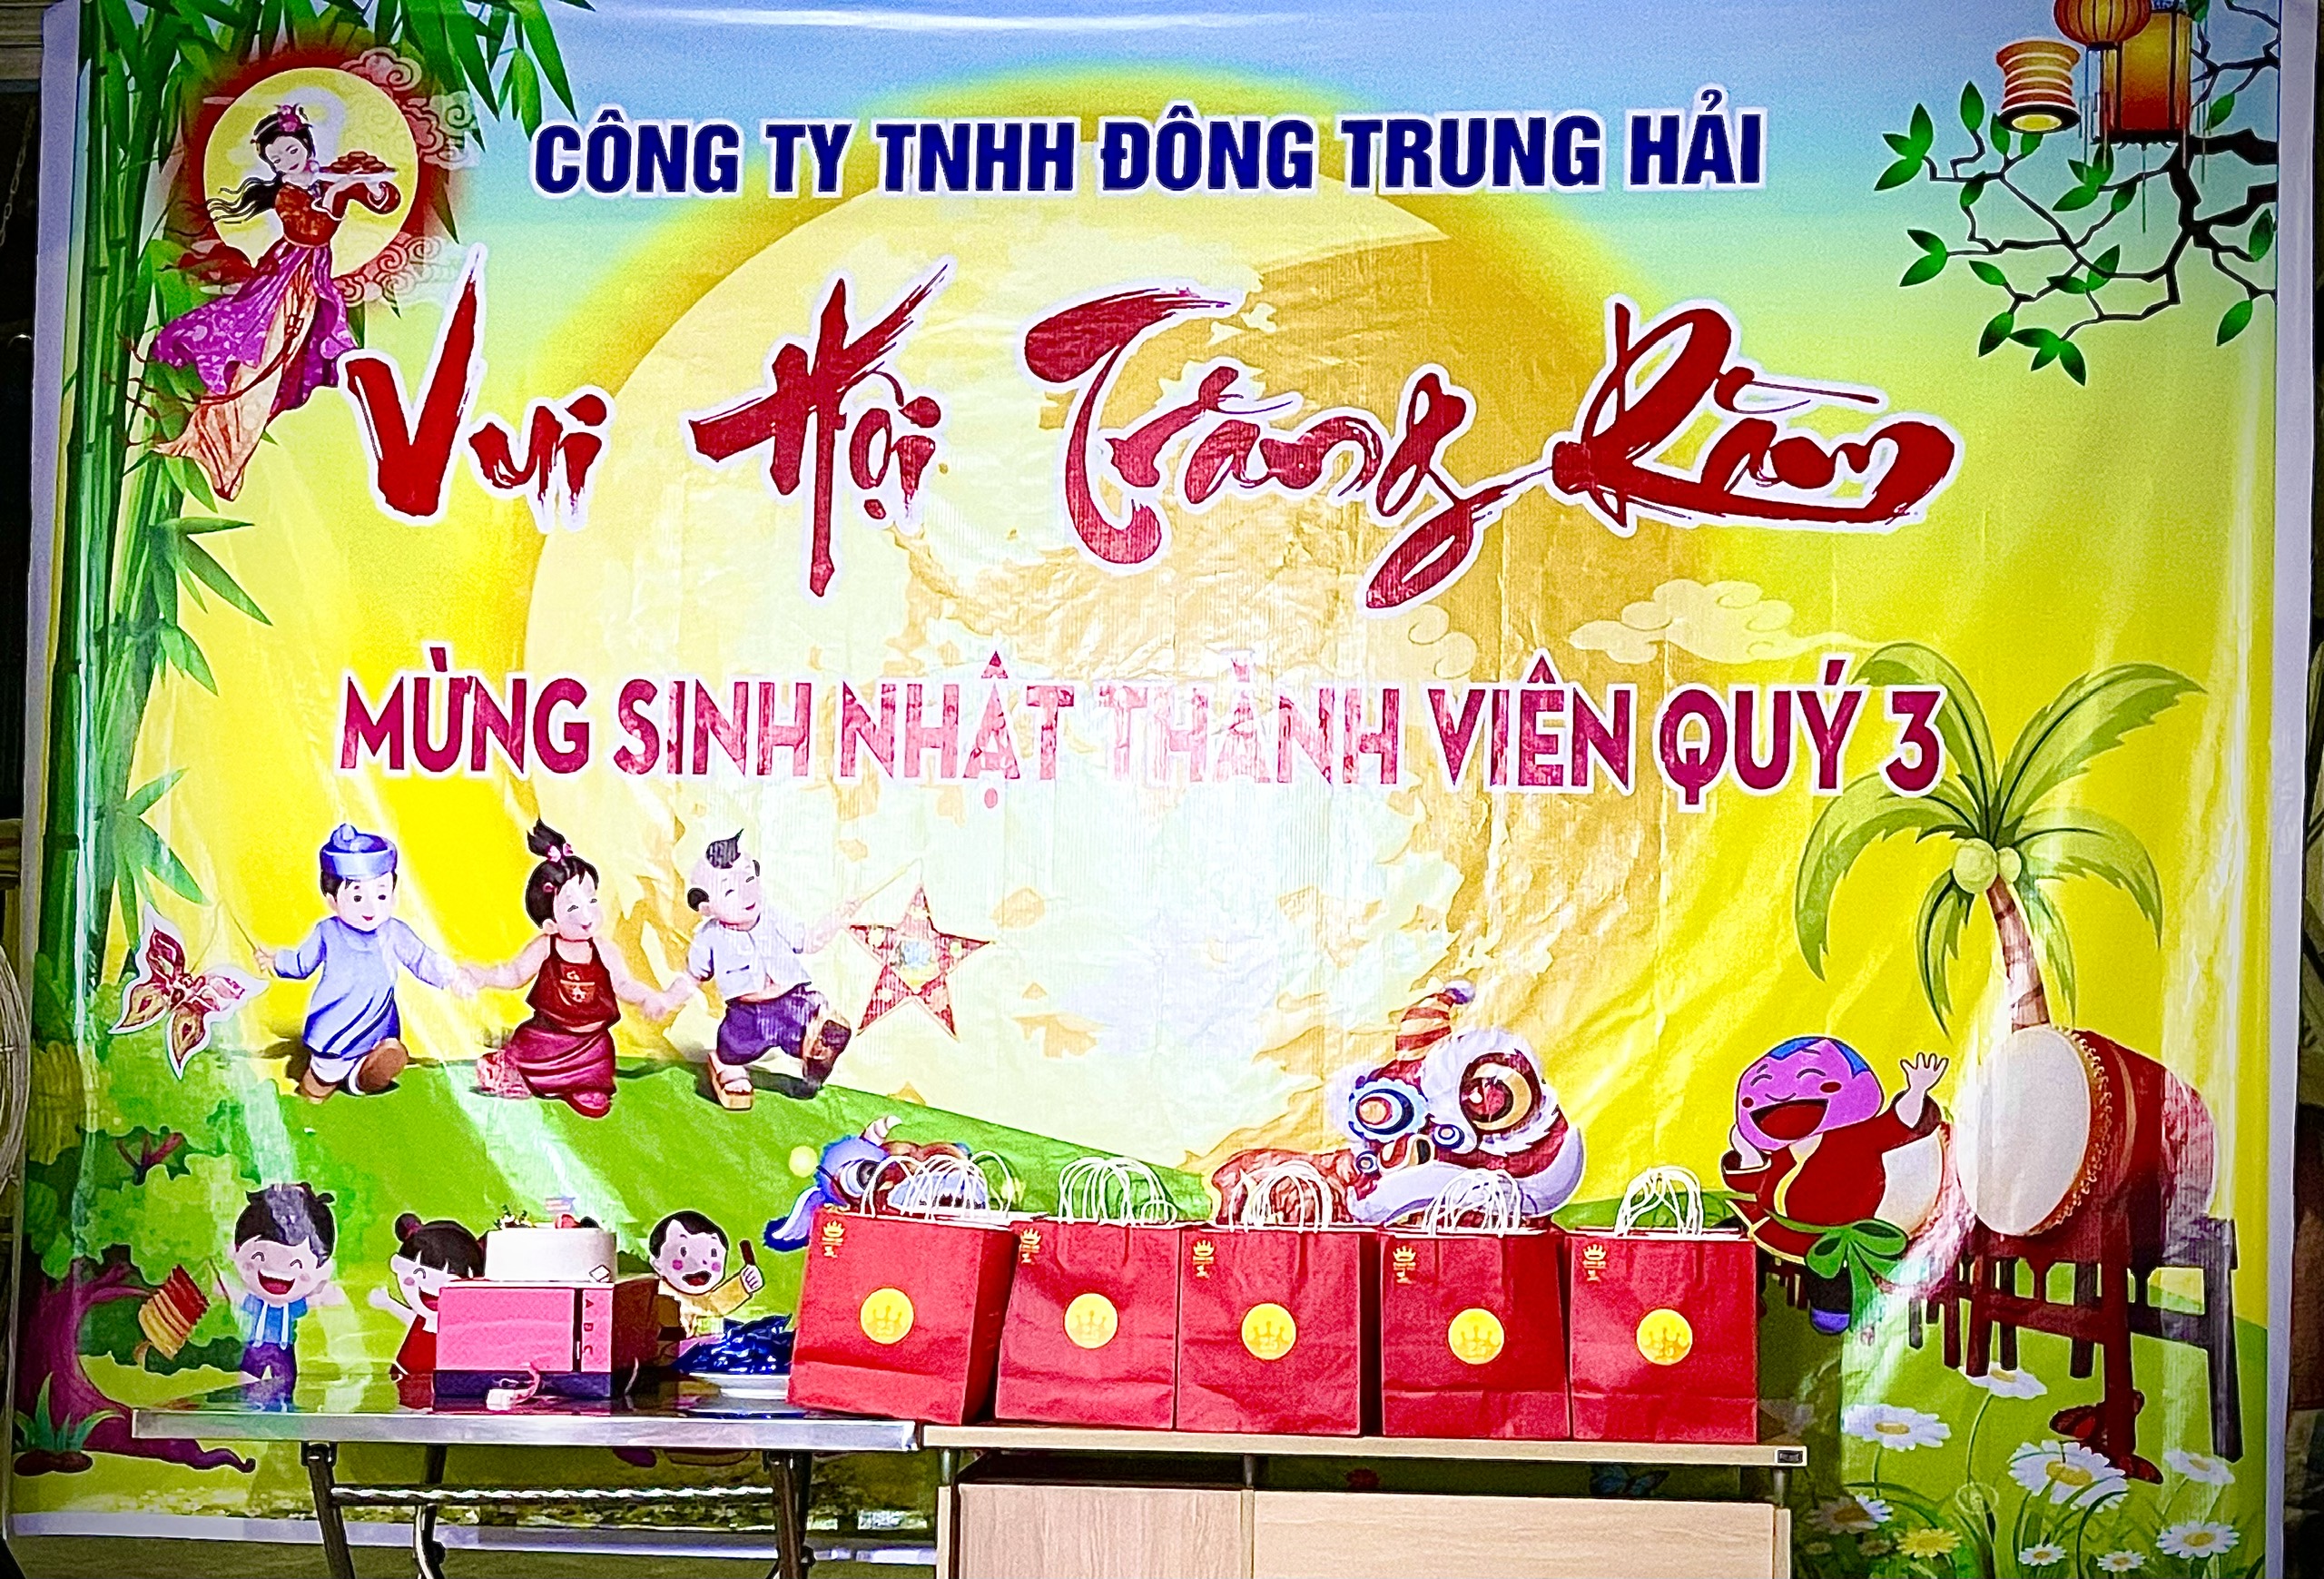 Công ty TNHH TMDV Đông Trung Hải tổ chức cho thiếu nhi vui Tết Trung thu